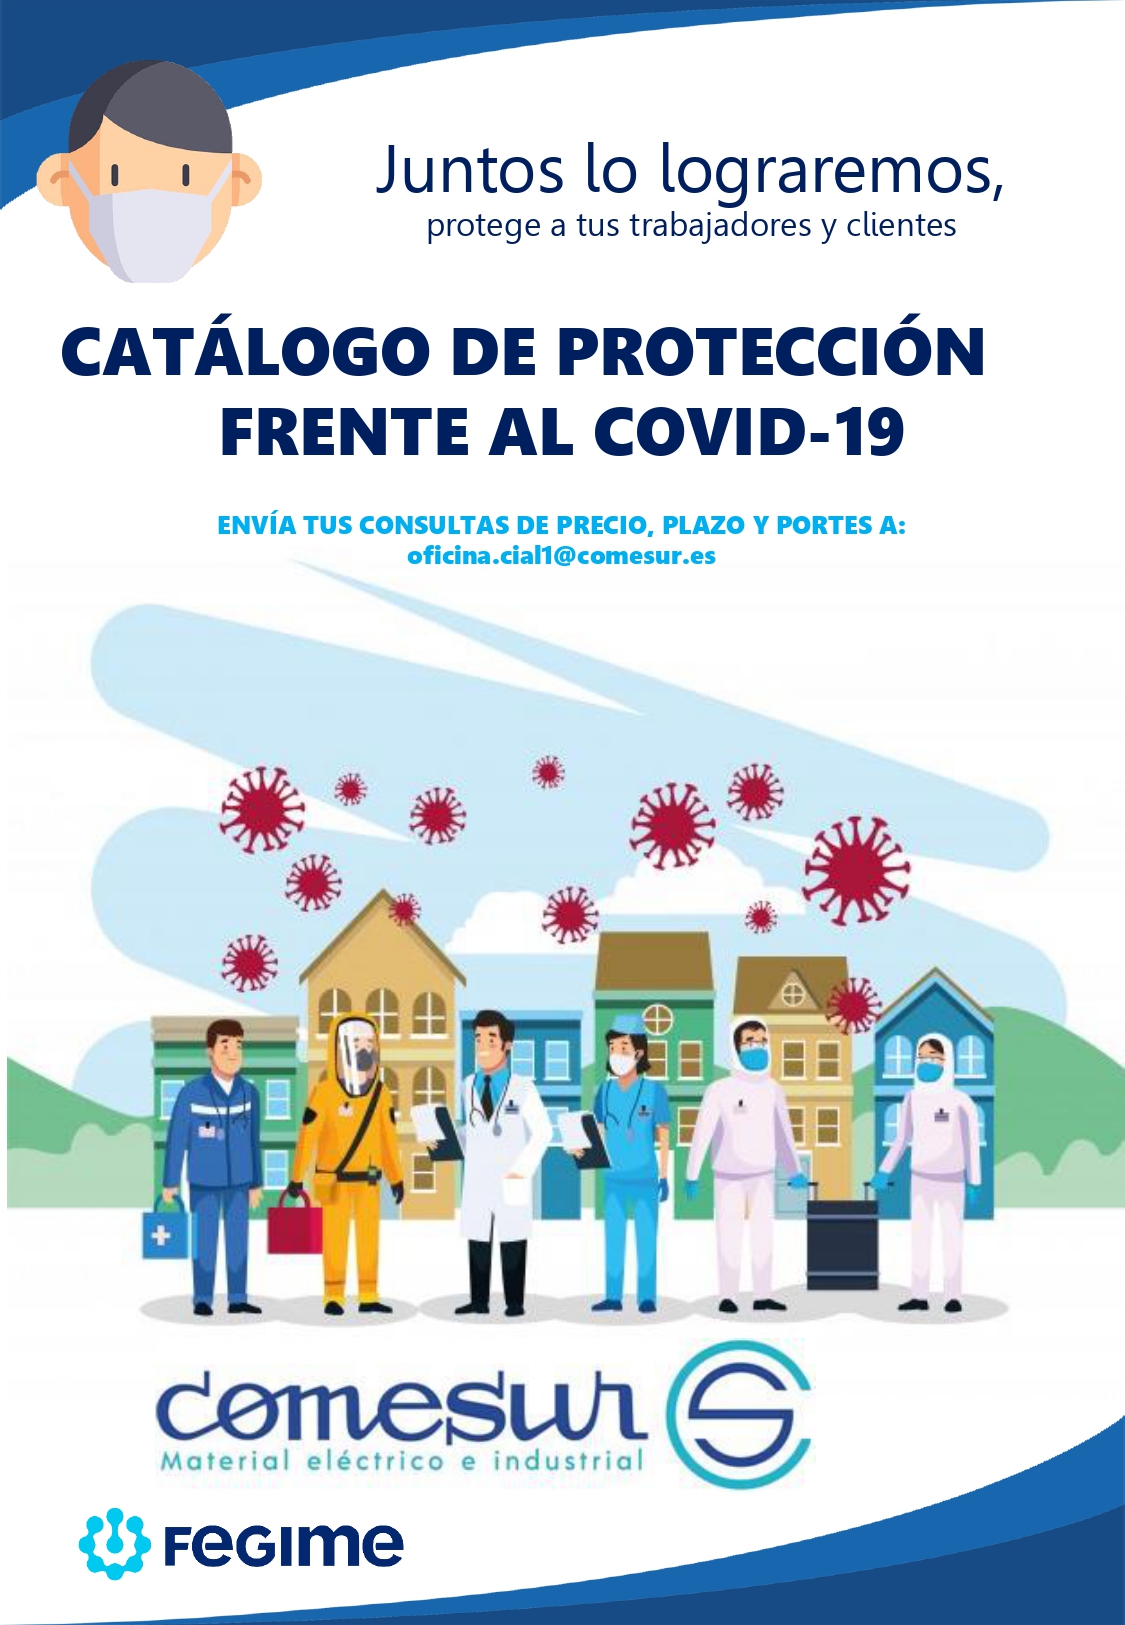 CATÁLOGO DE FRENTE AL COVID-19 Comesur